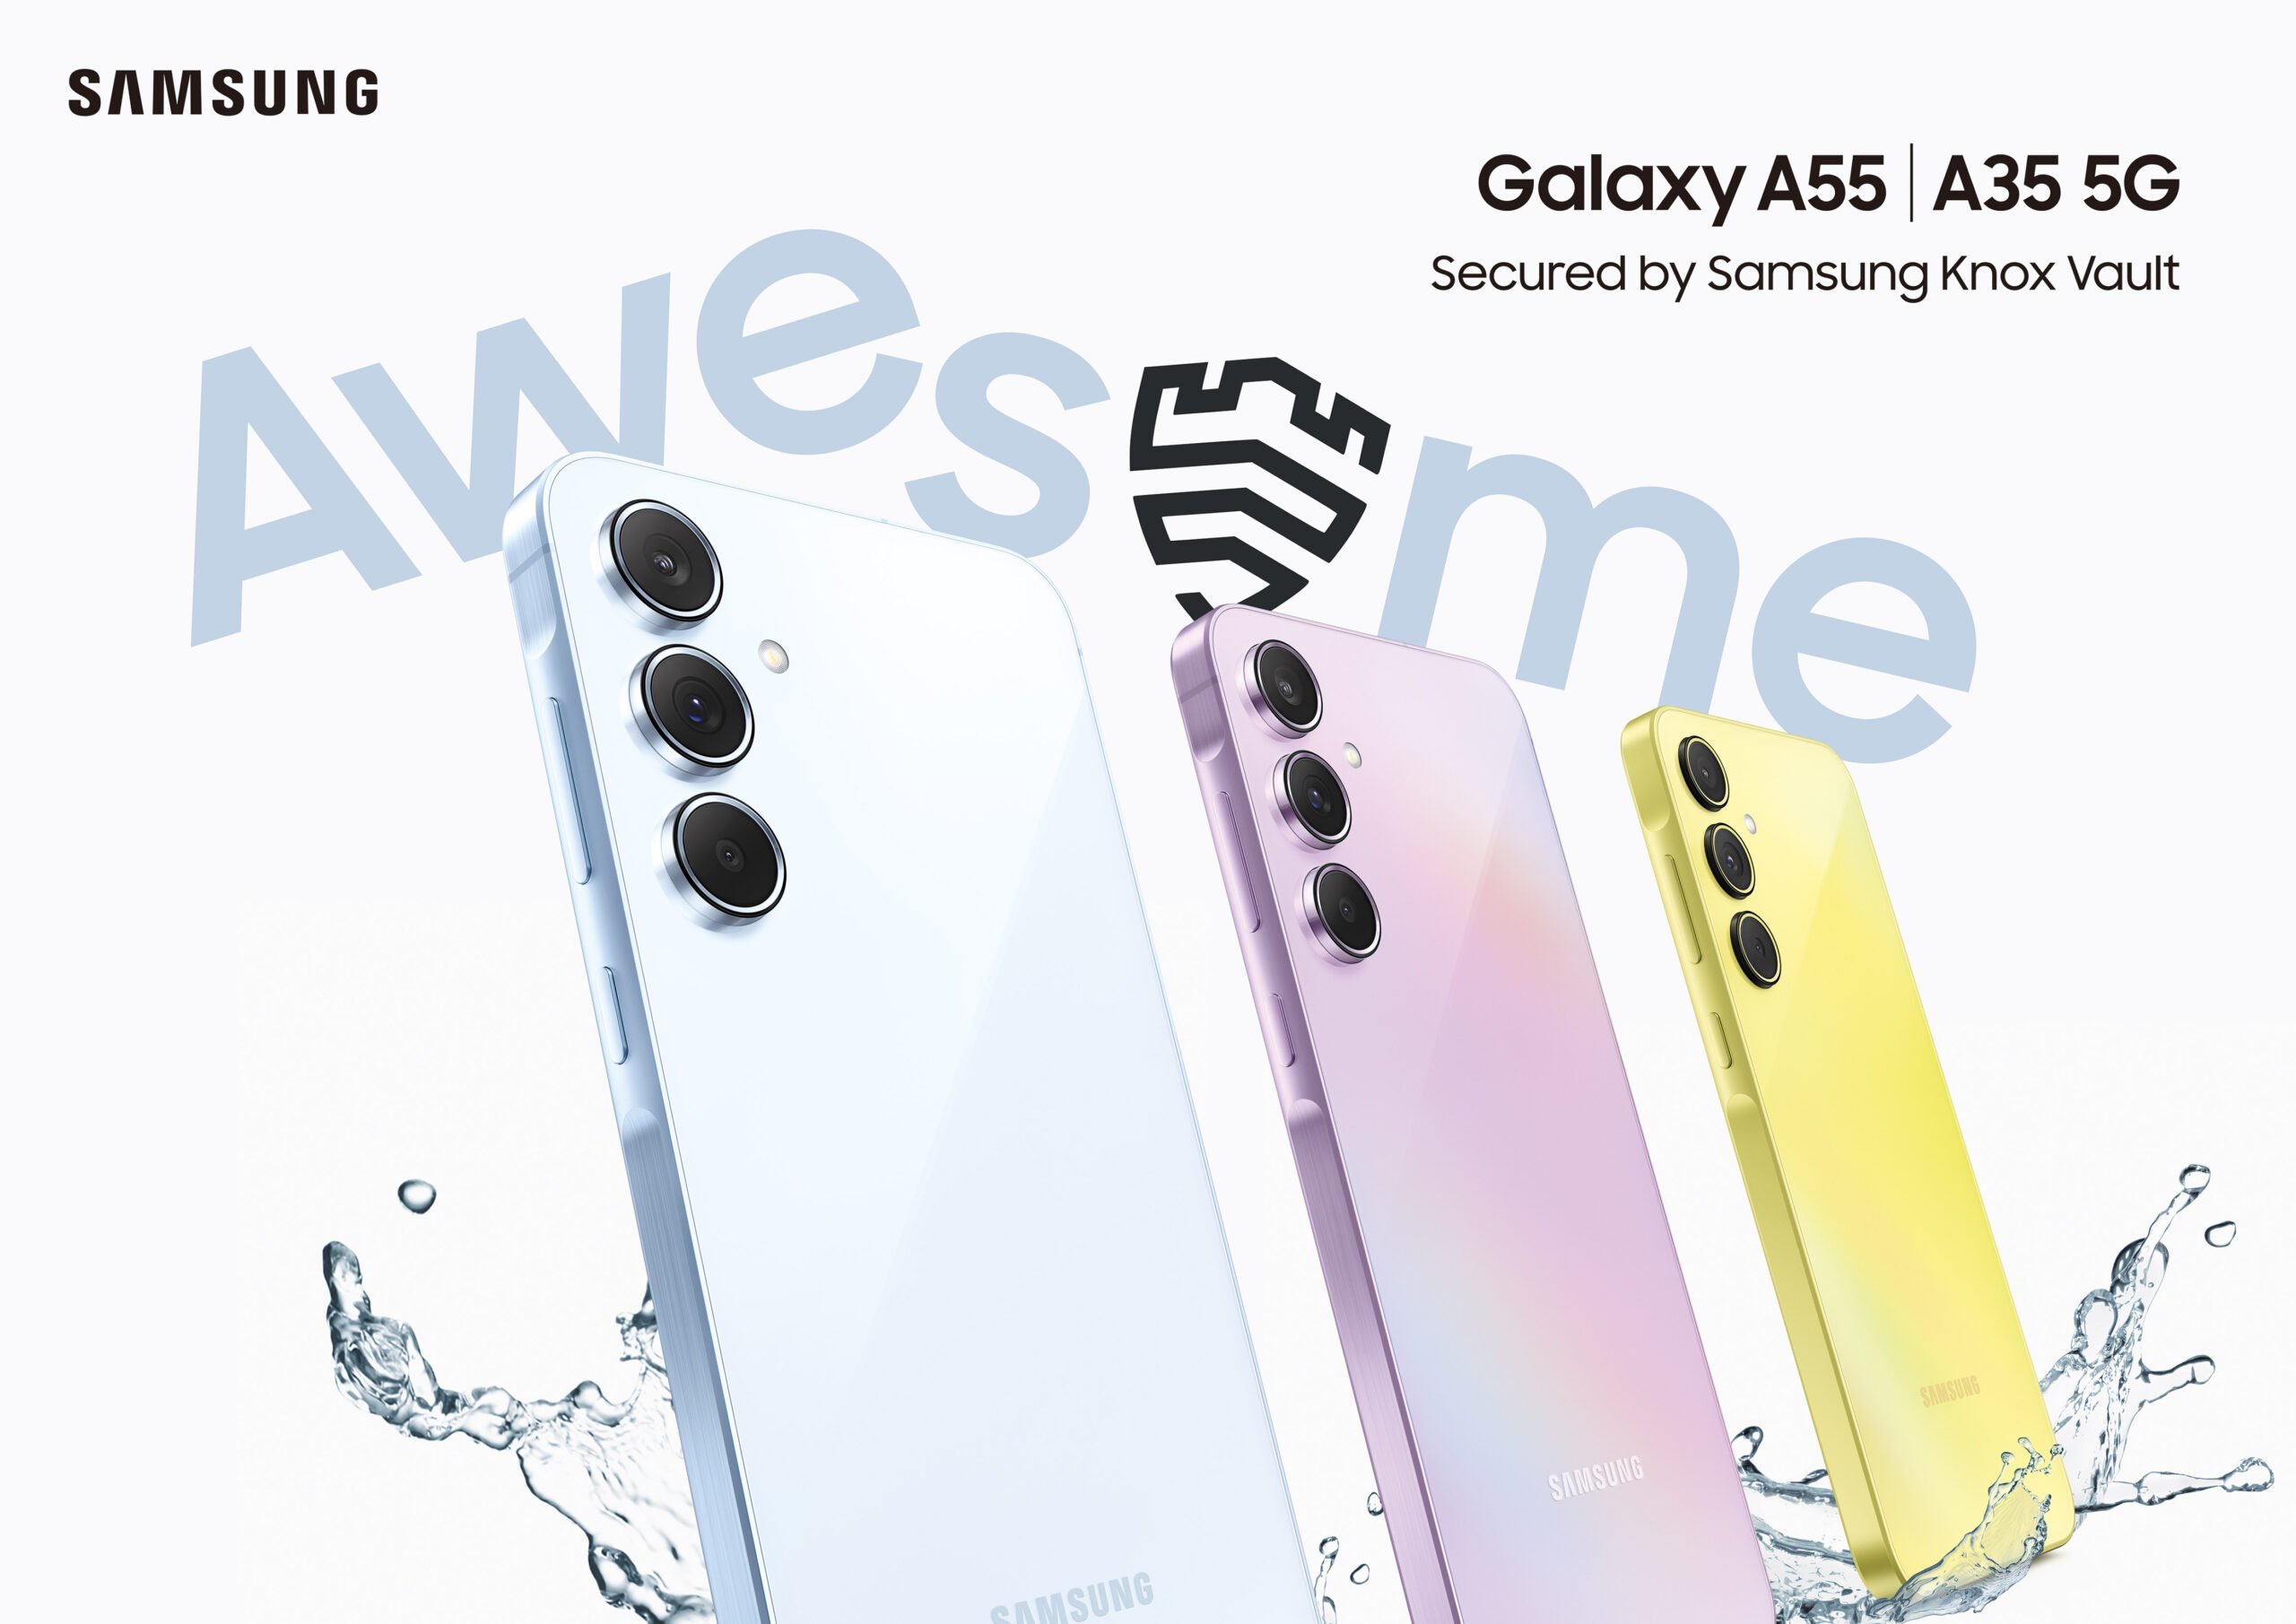 三星 Galaxy A55 5G 、 Galaxy A35 5G 新登場： 為全民而生的卓越創新與安全性 @3C 達人廖阿輝